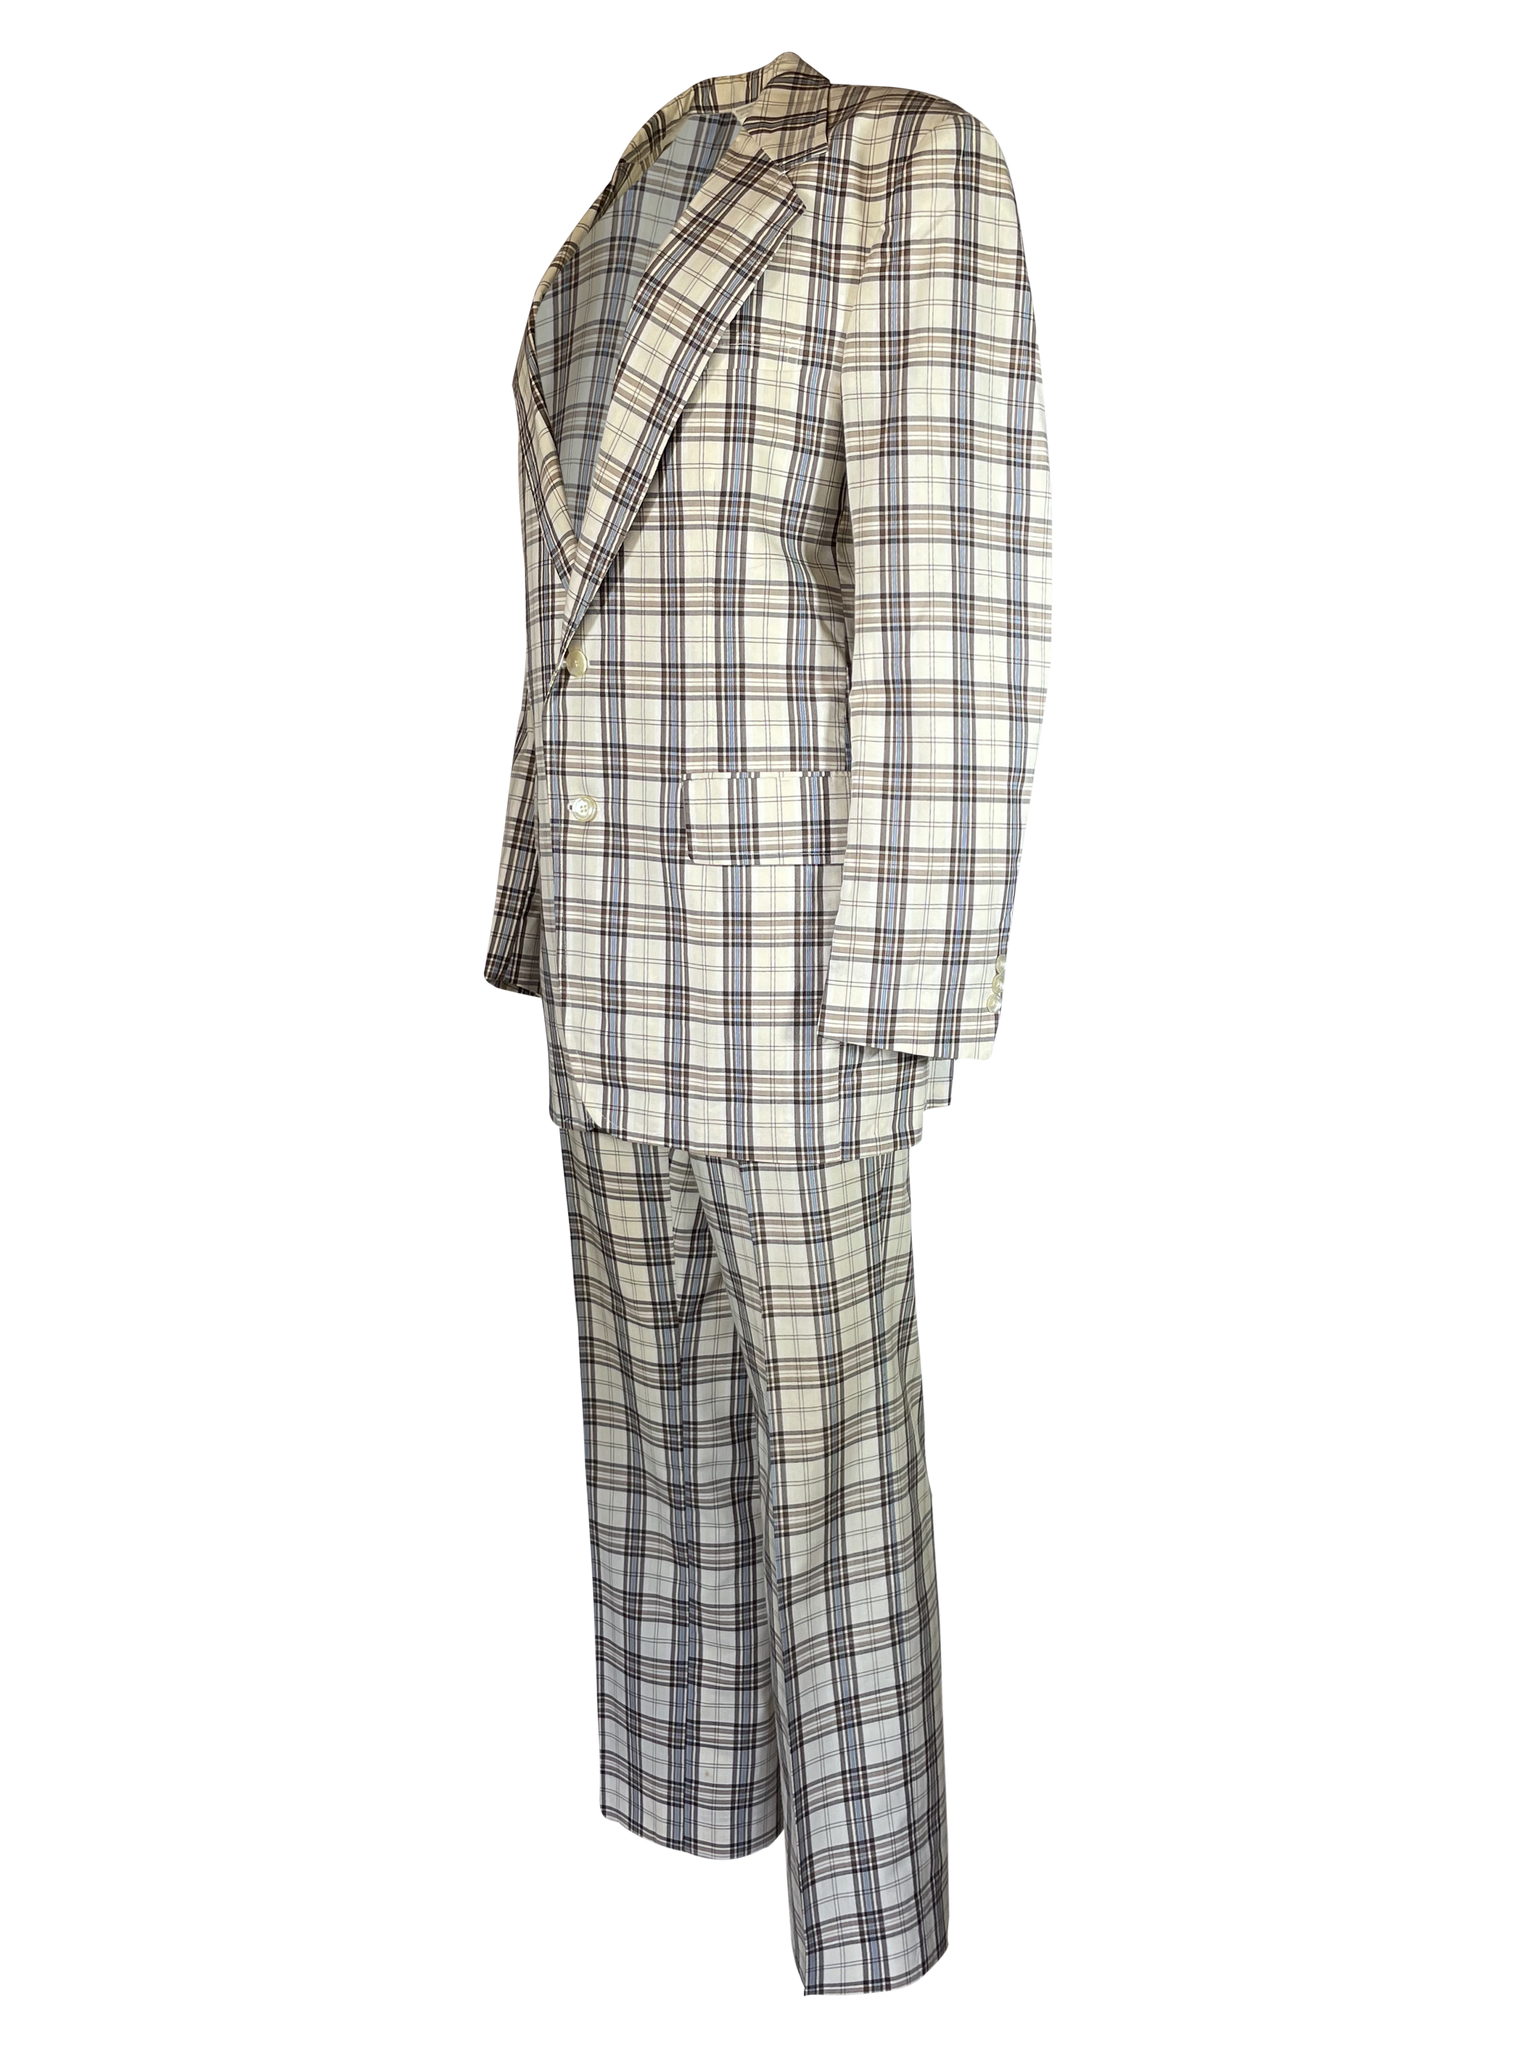 1970s Plaid Pant Suit